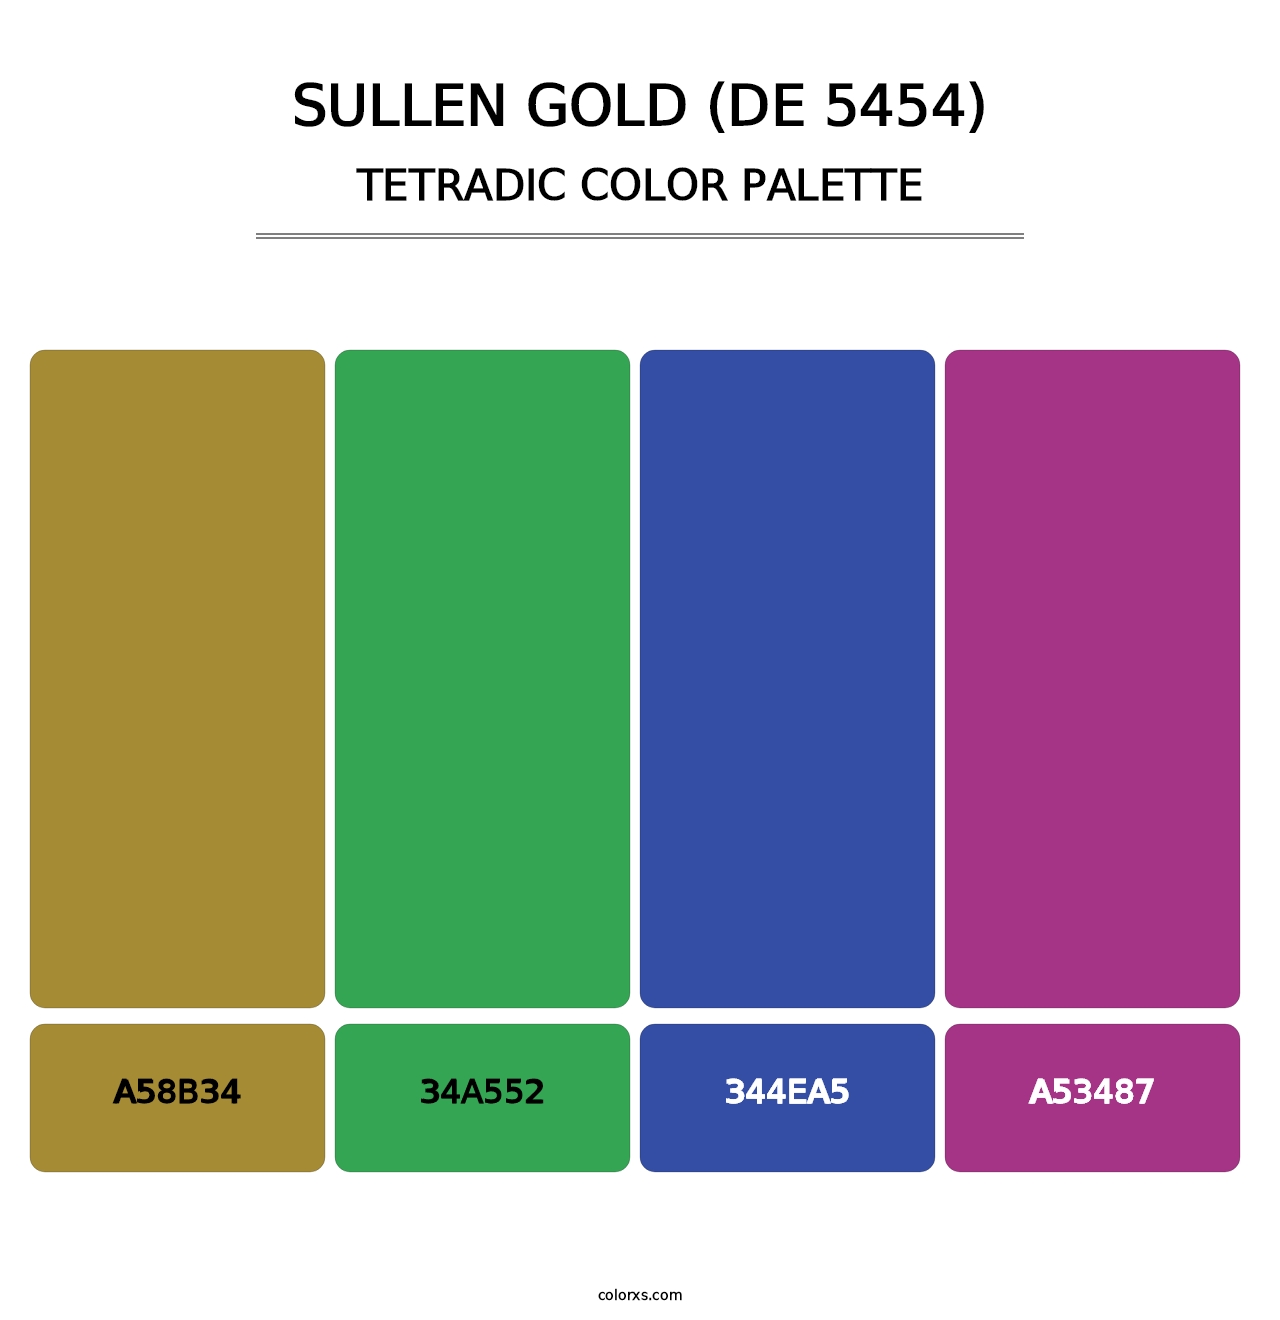 Sullen Gold (DE 5454) - Tetradic Color Palette